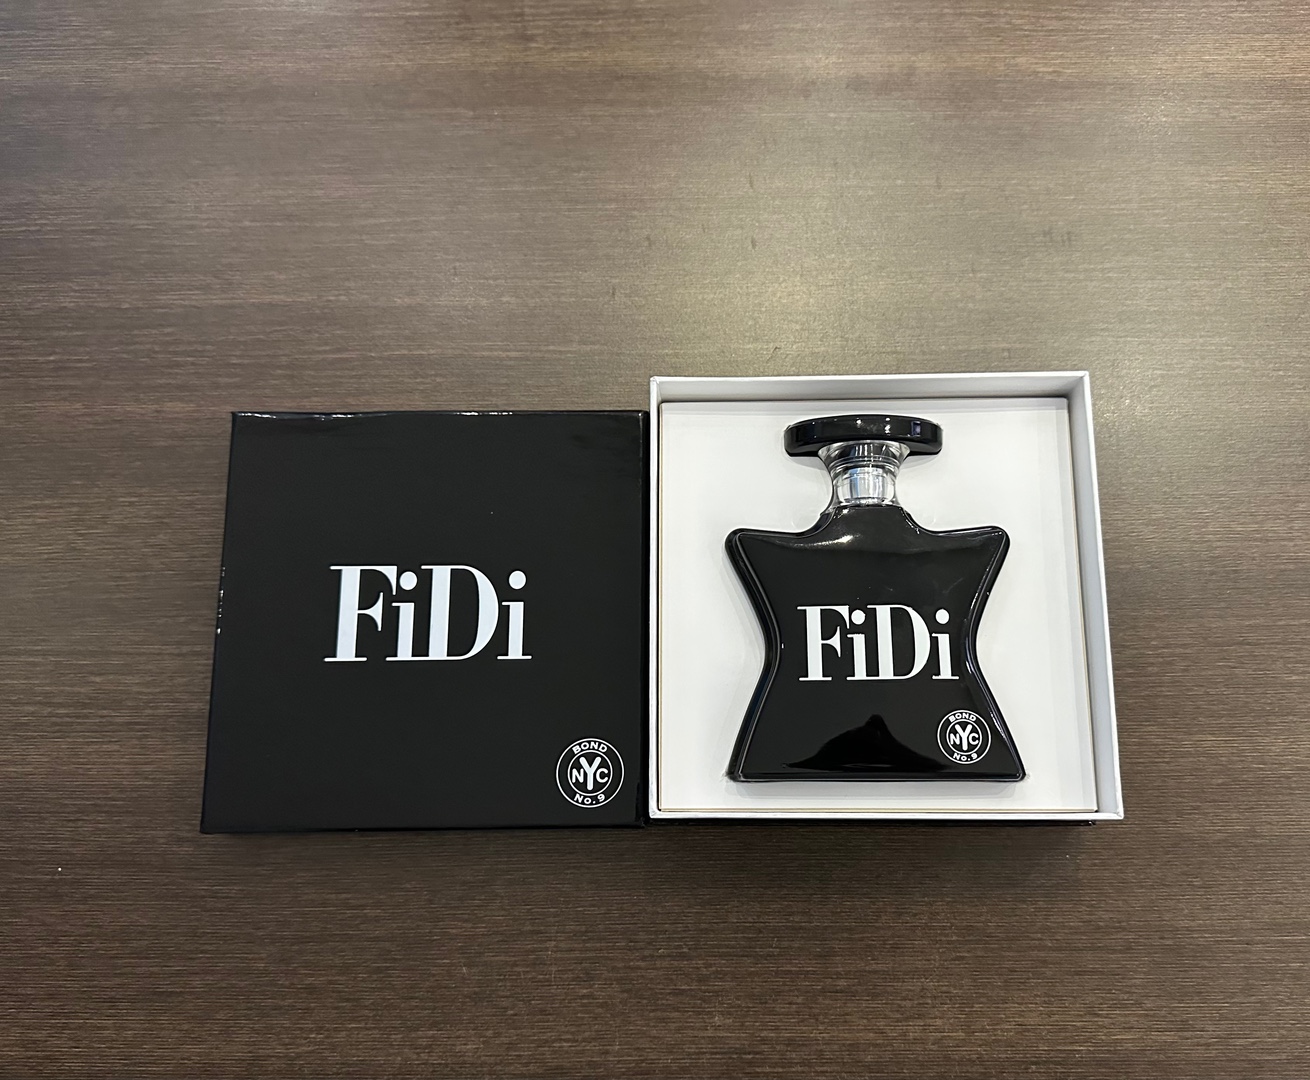 joyas, relojes y accesorios - Perfume FiDi Bond NO.9 NYC Nuevo 100% Original RD$ 15,900 NEG 0